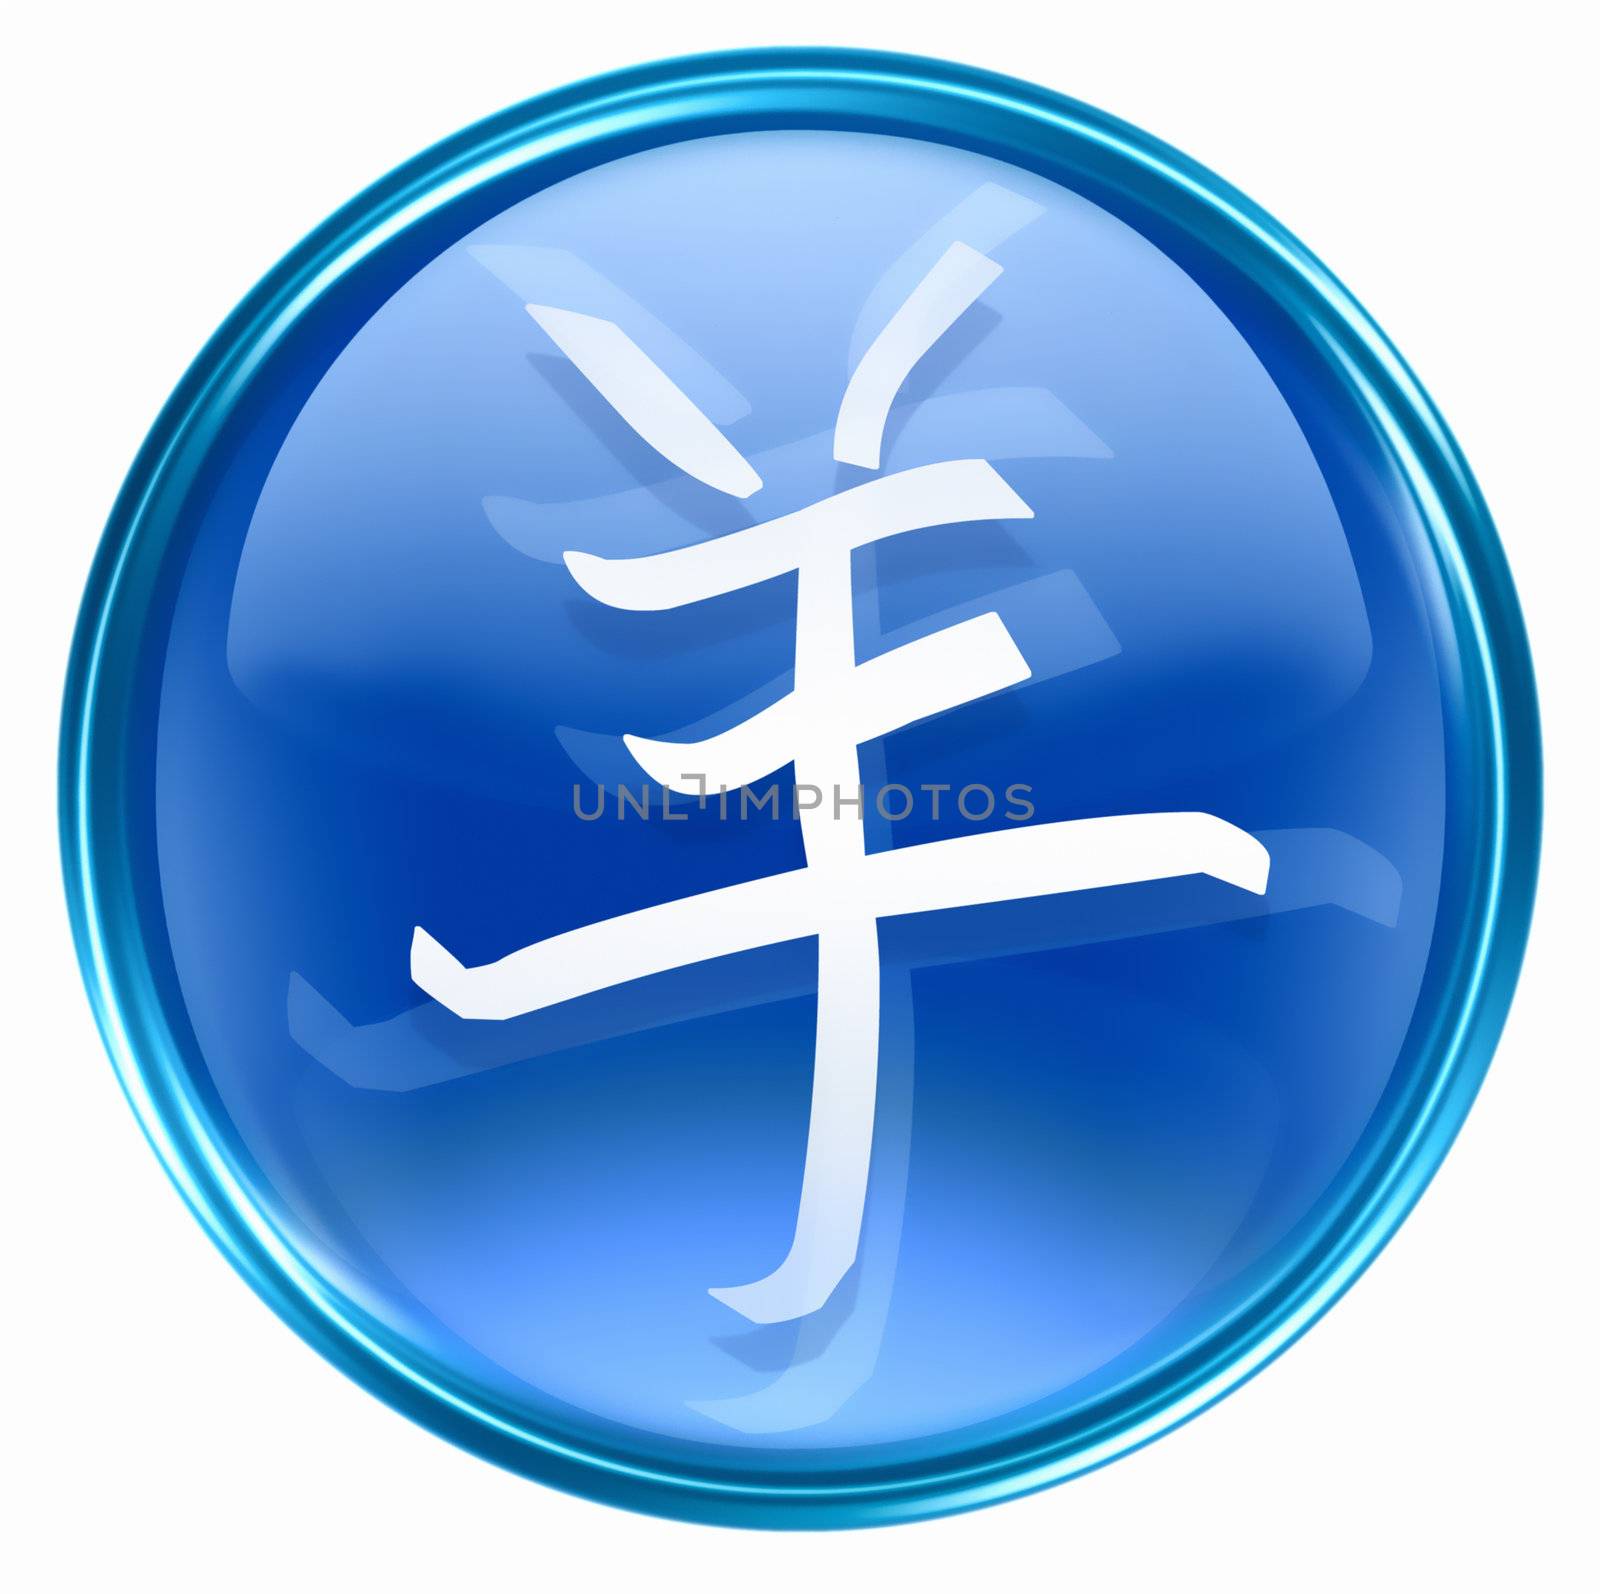 Goat Zodiac icon blue, isolated on white background.